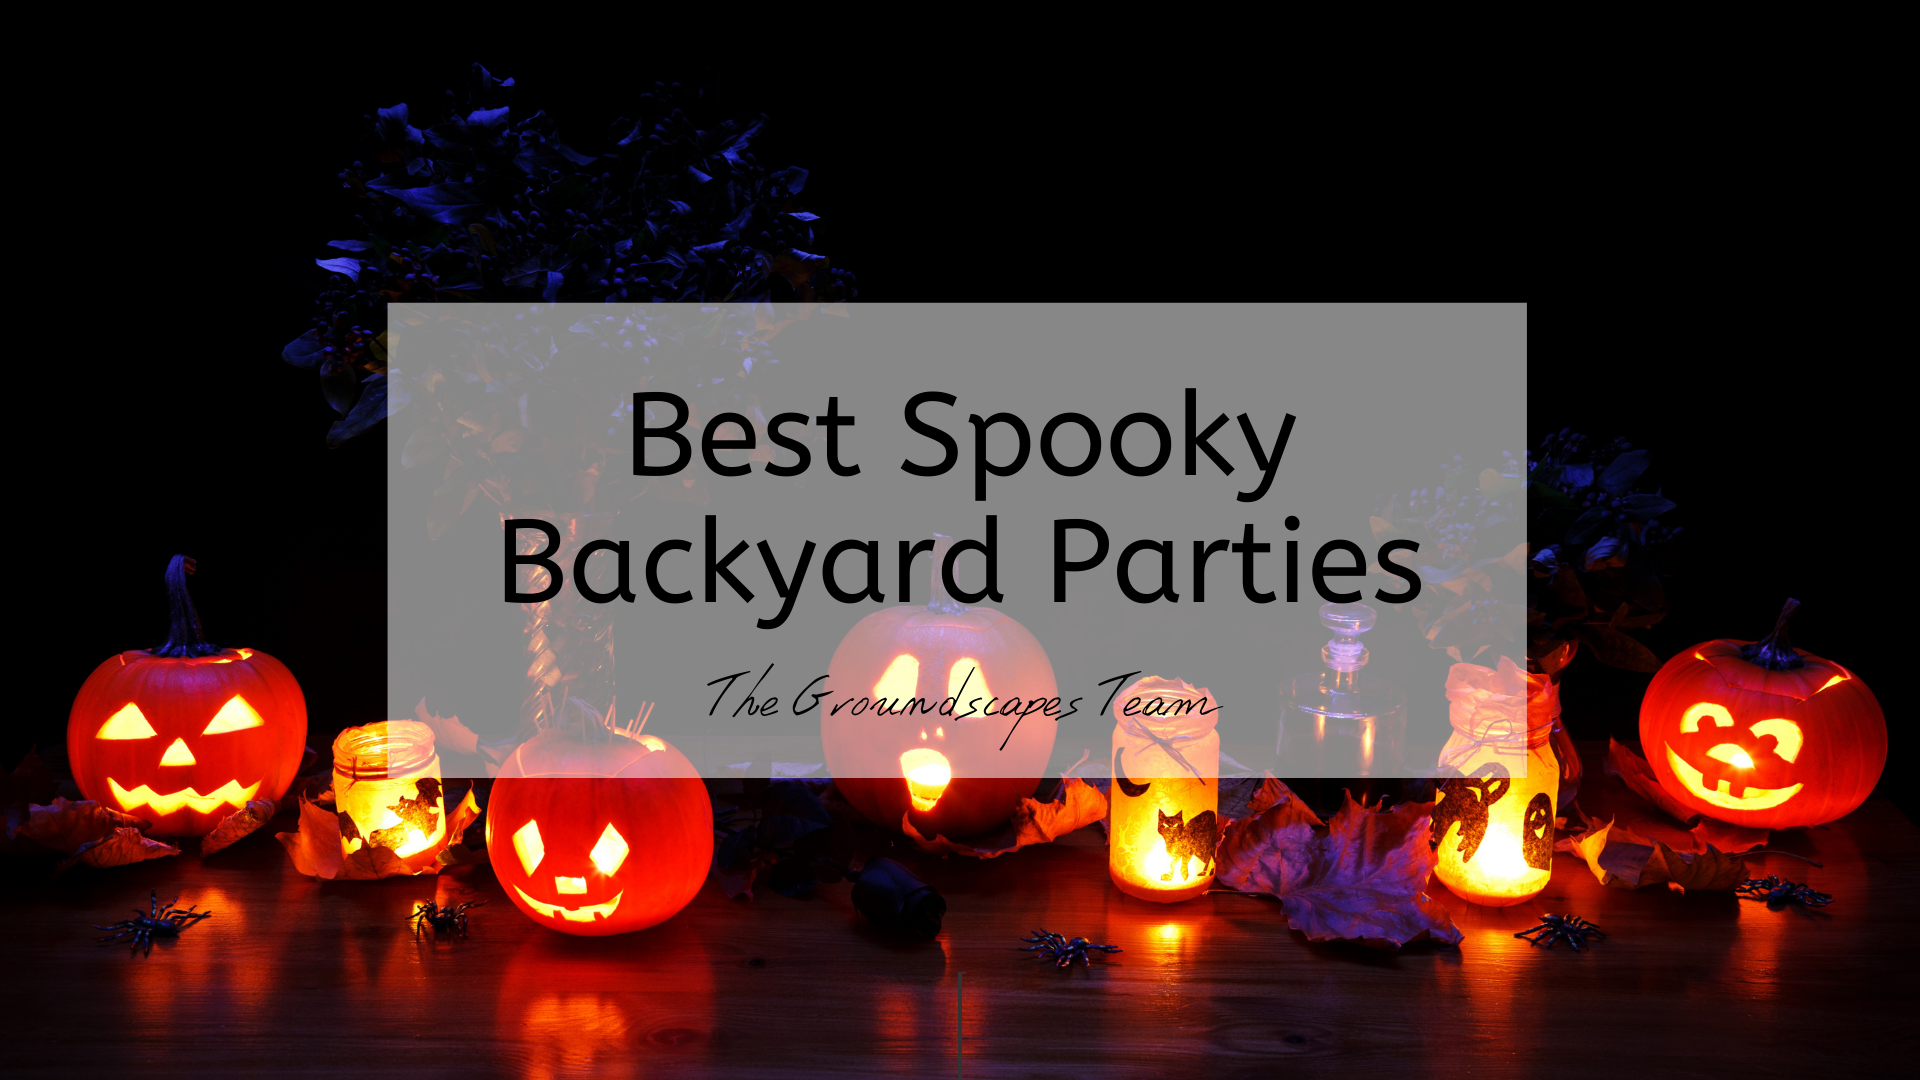 Best Spooky Backyard Parties